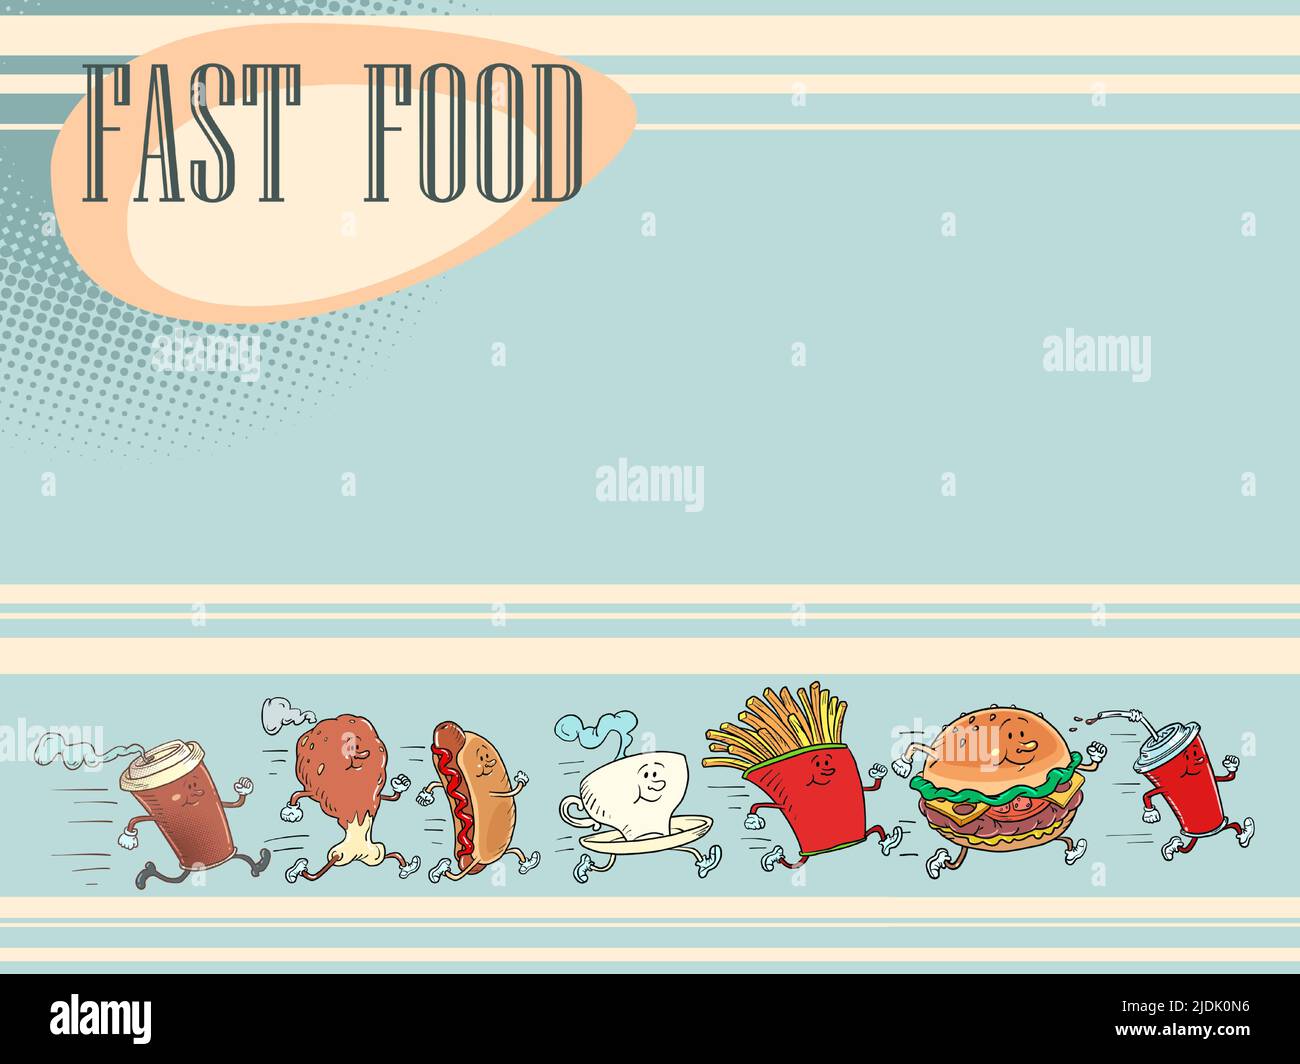 Productos de comida rápida, fondo del menú del restaurante. Hamburguesa patatas fritas beber cola pollo pierna perrito caliente taza de café Ilustración del Vector